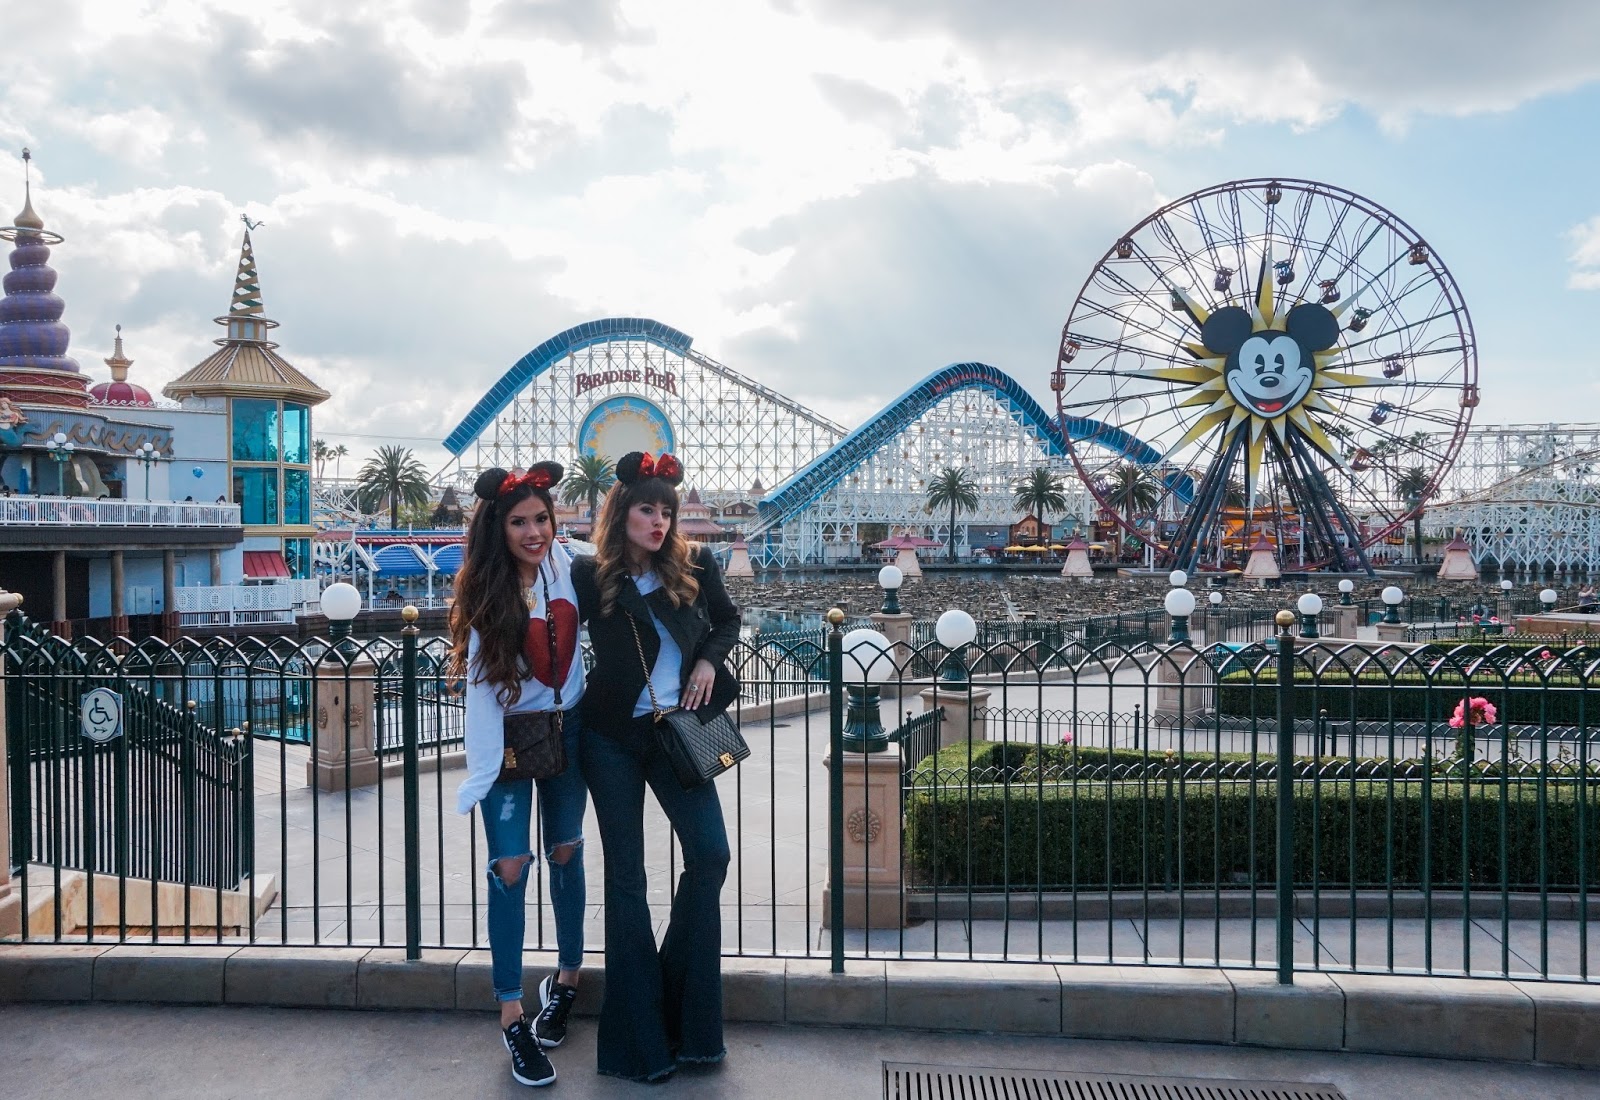 Resultado de imagen para Disney California Adventure Park blogger instagram